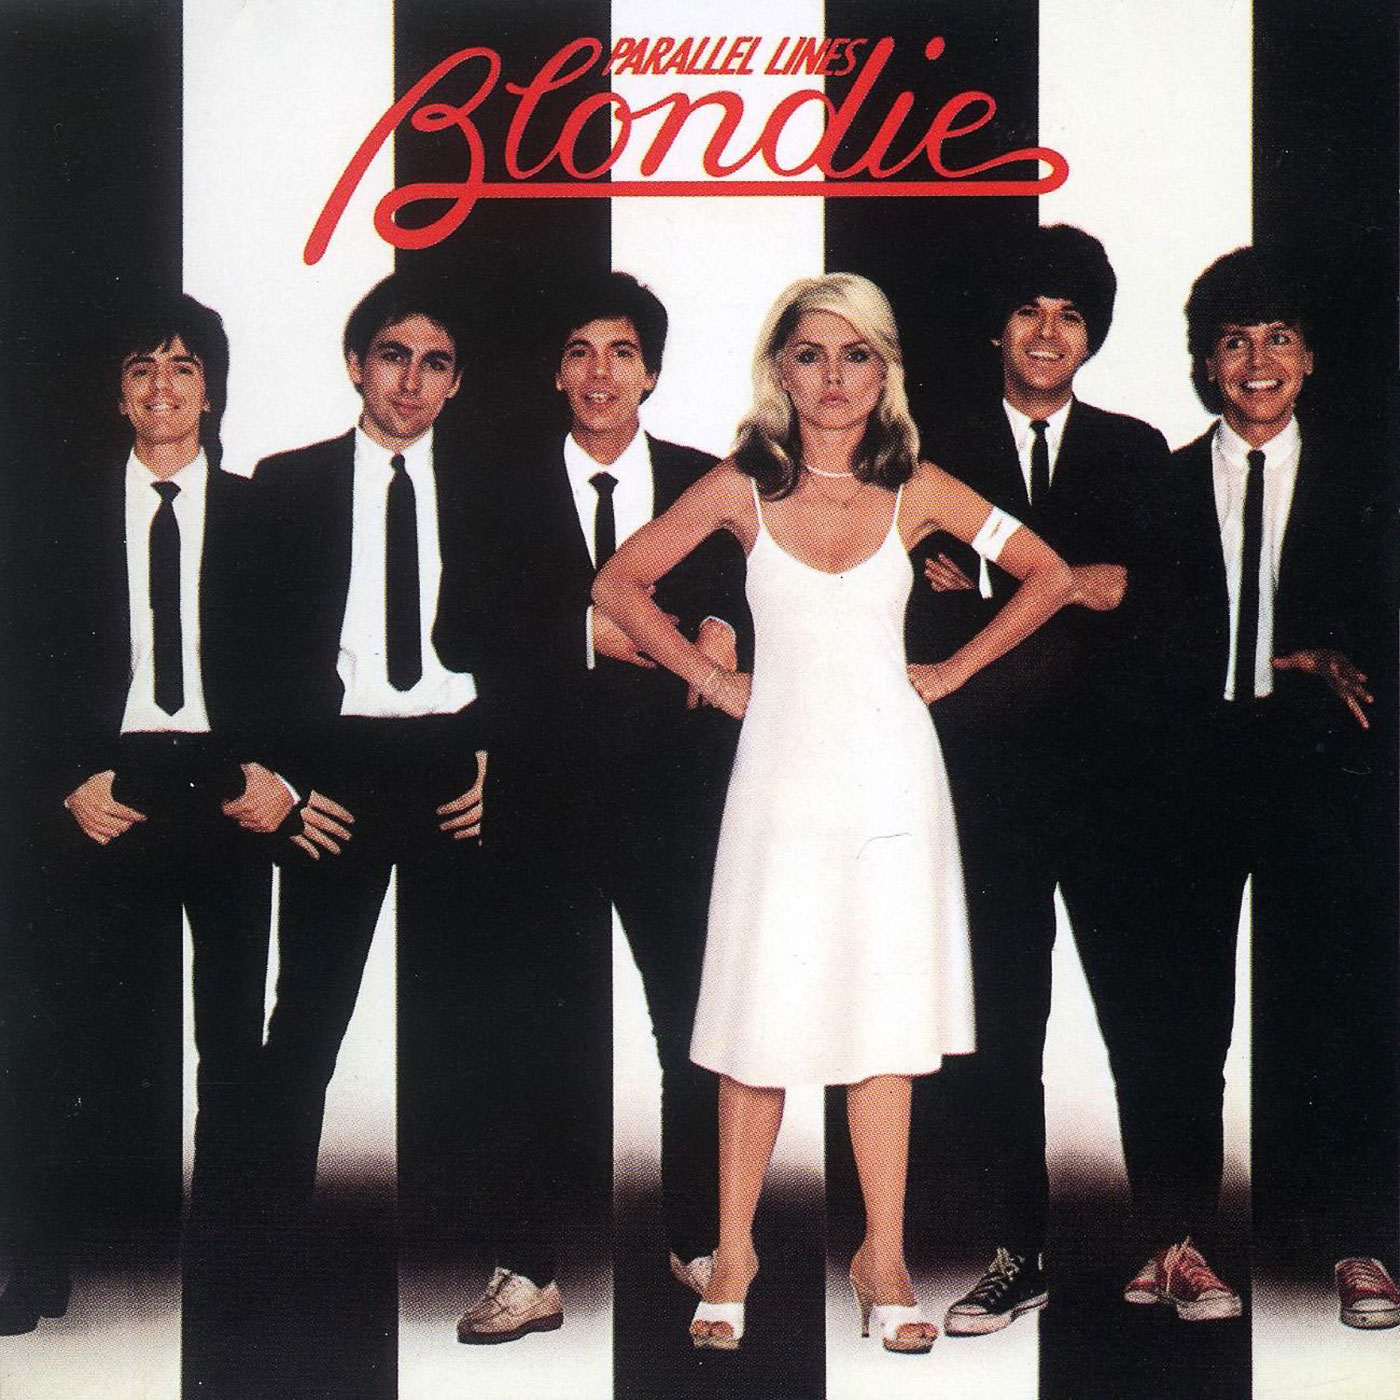 397 Blondie – Parallel Lines